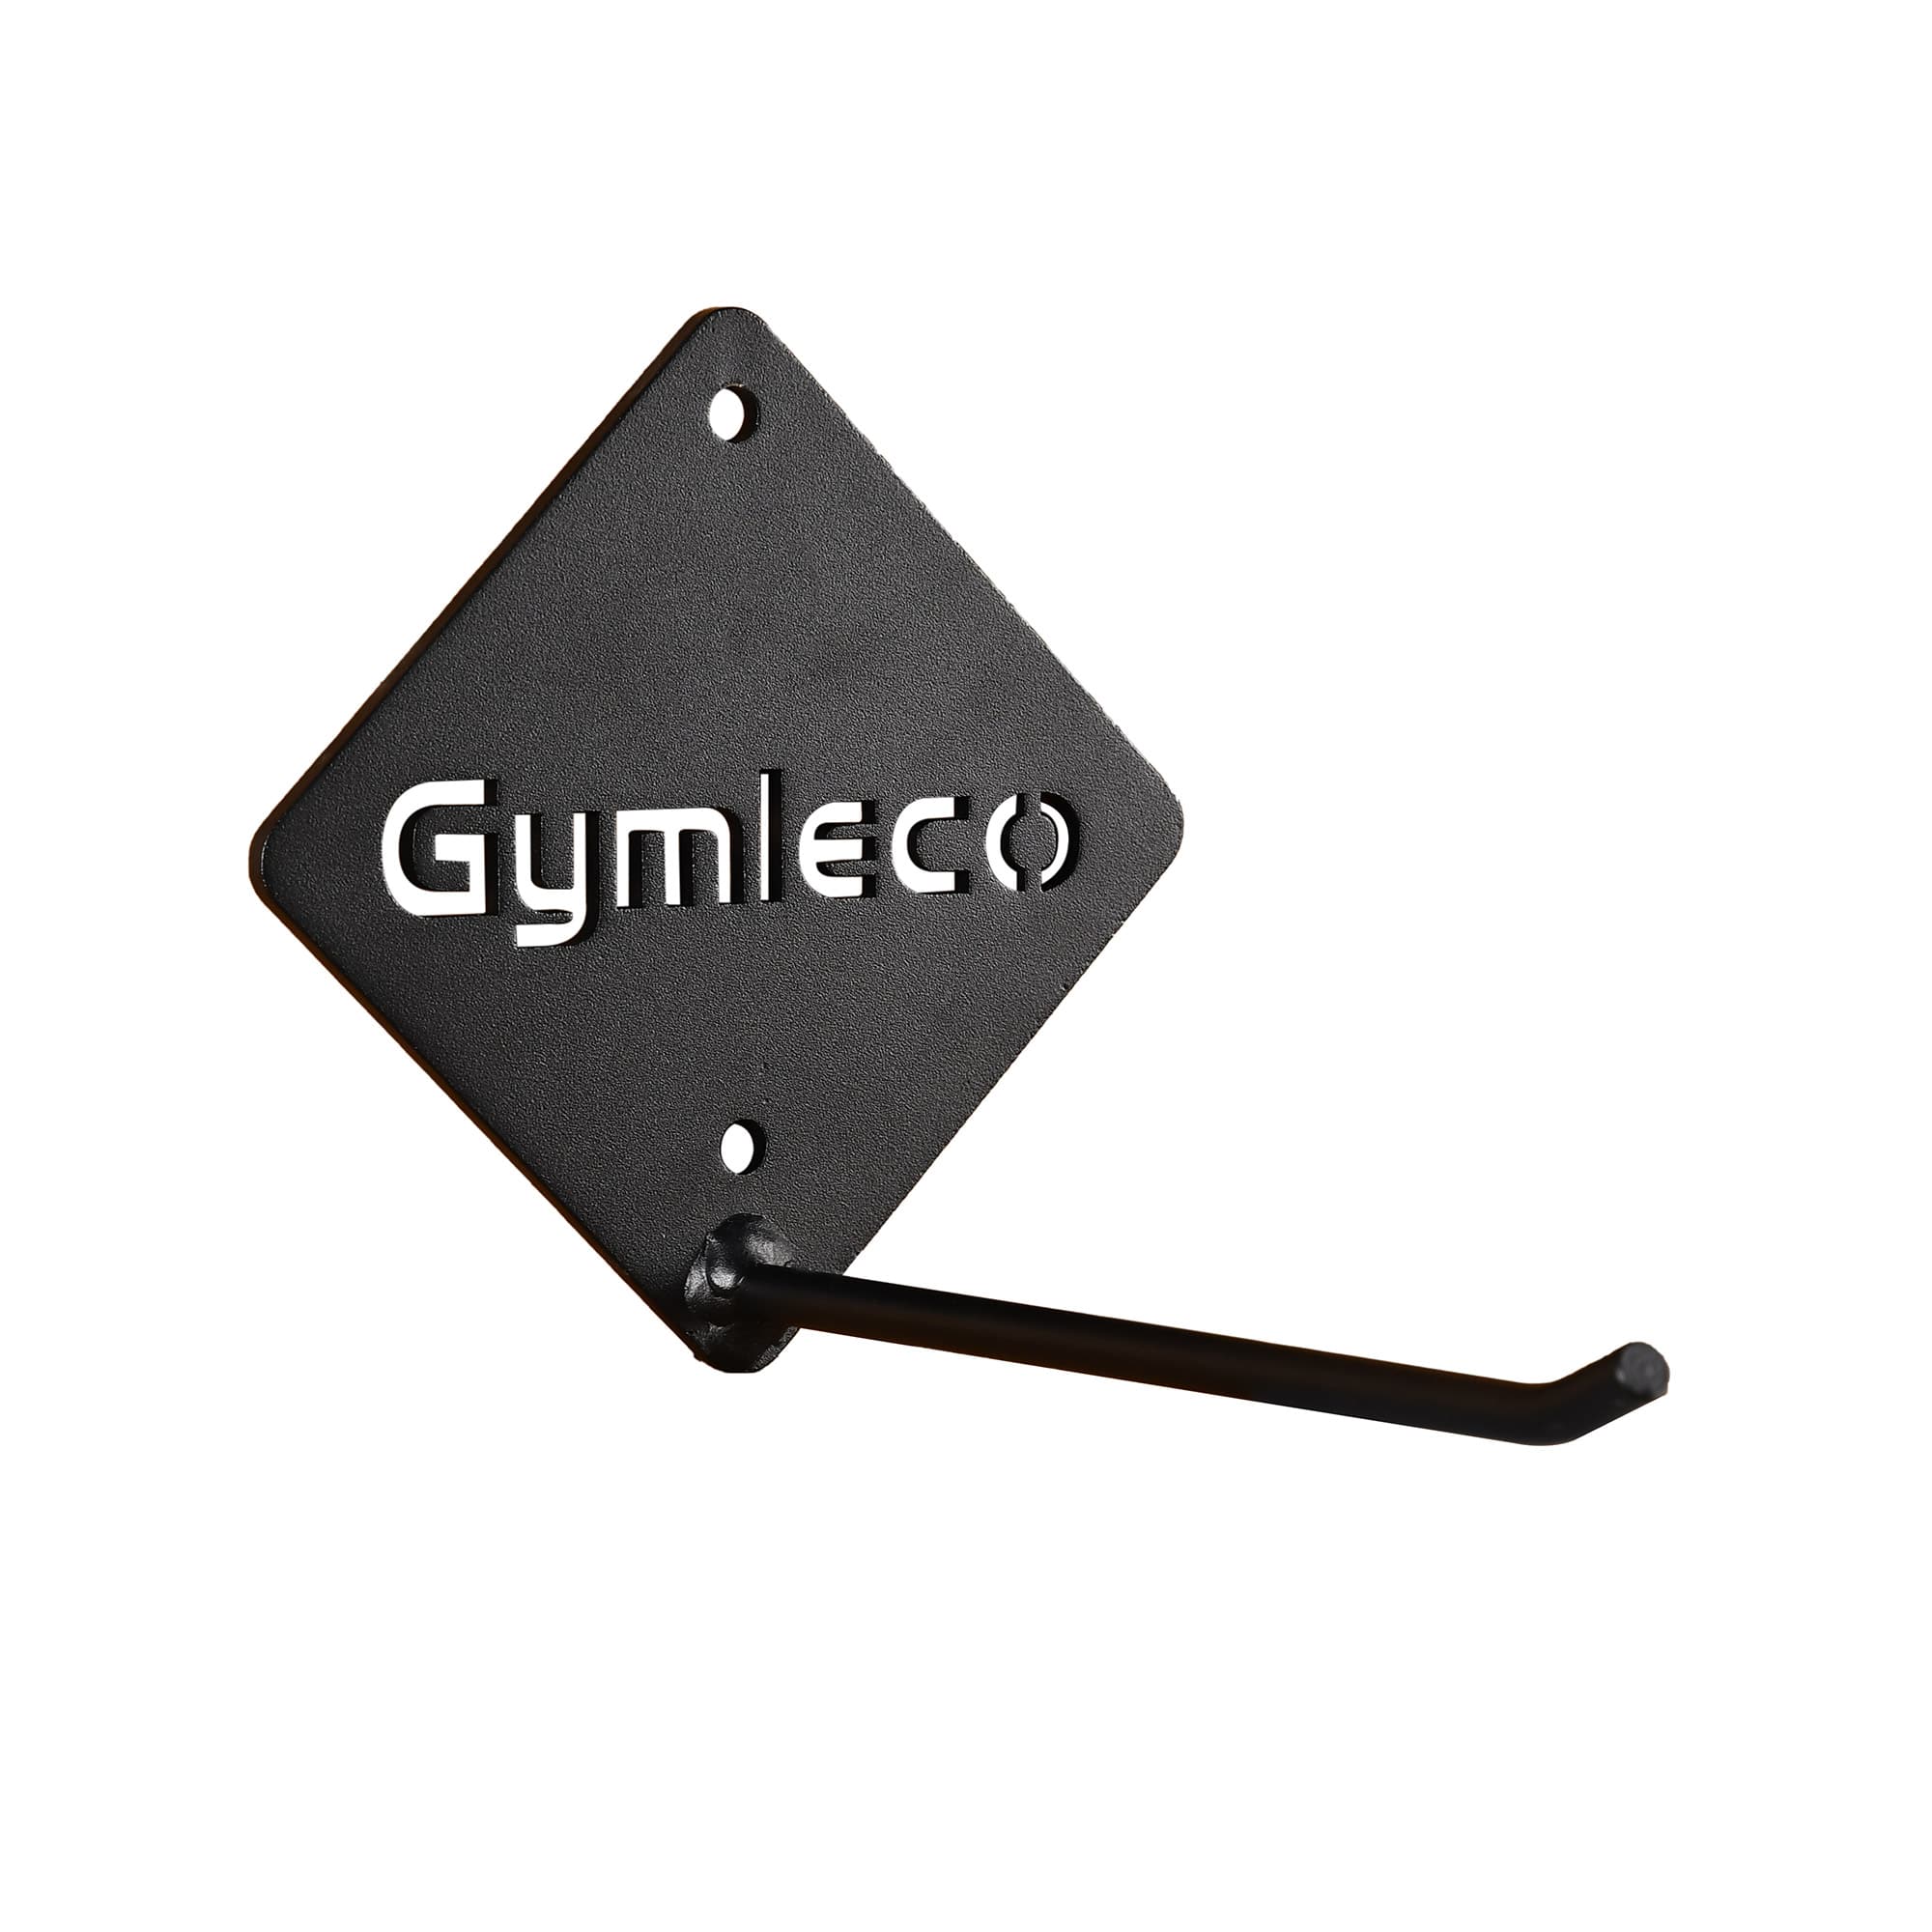 Mat storage 461 from Gymleco